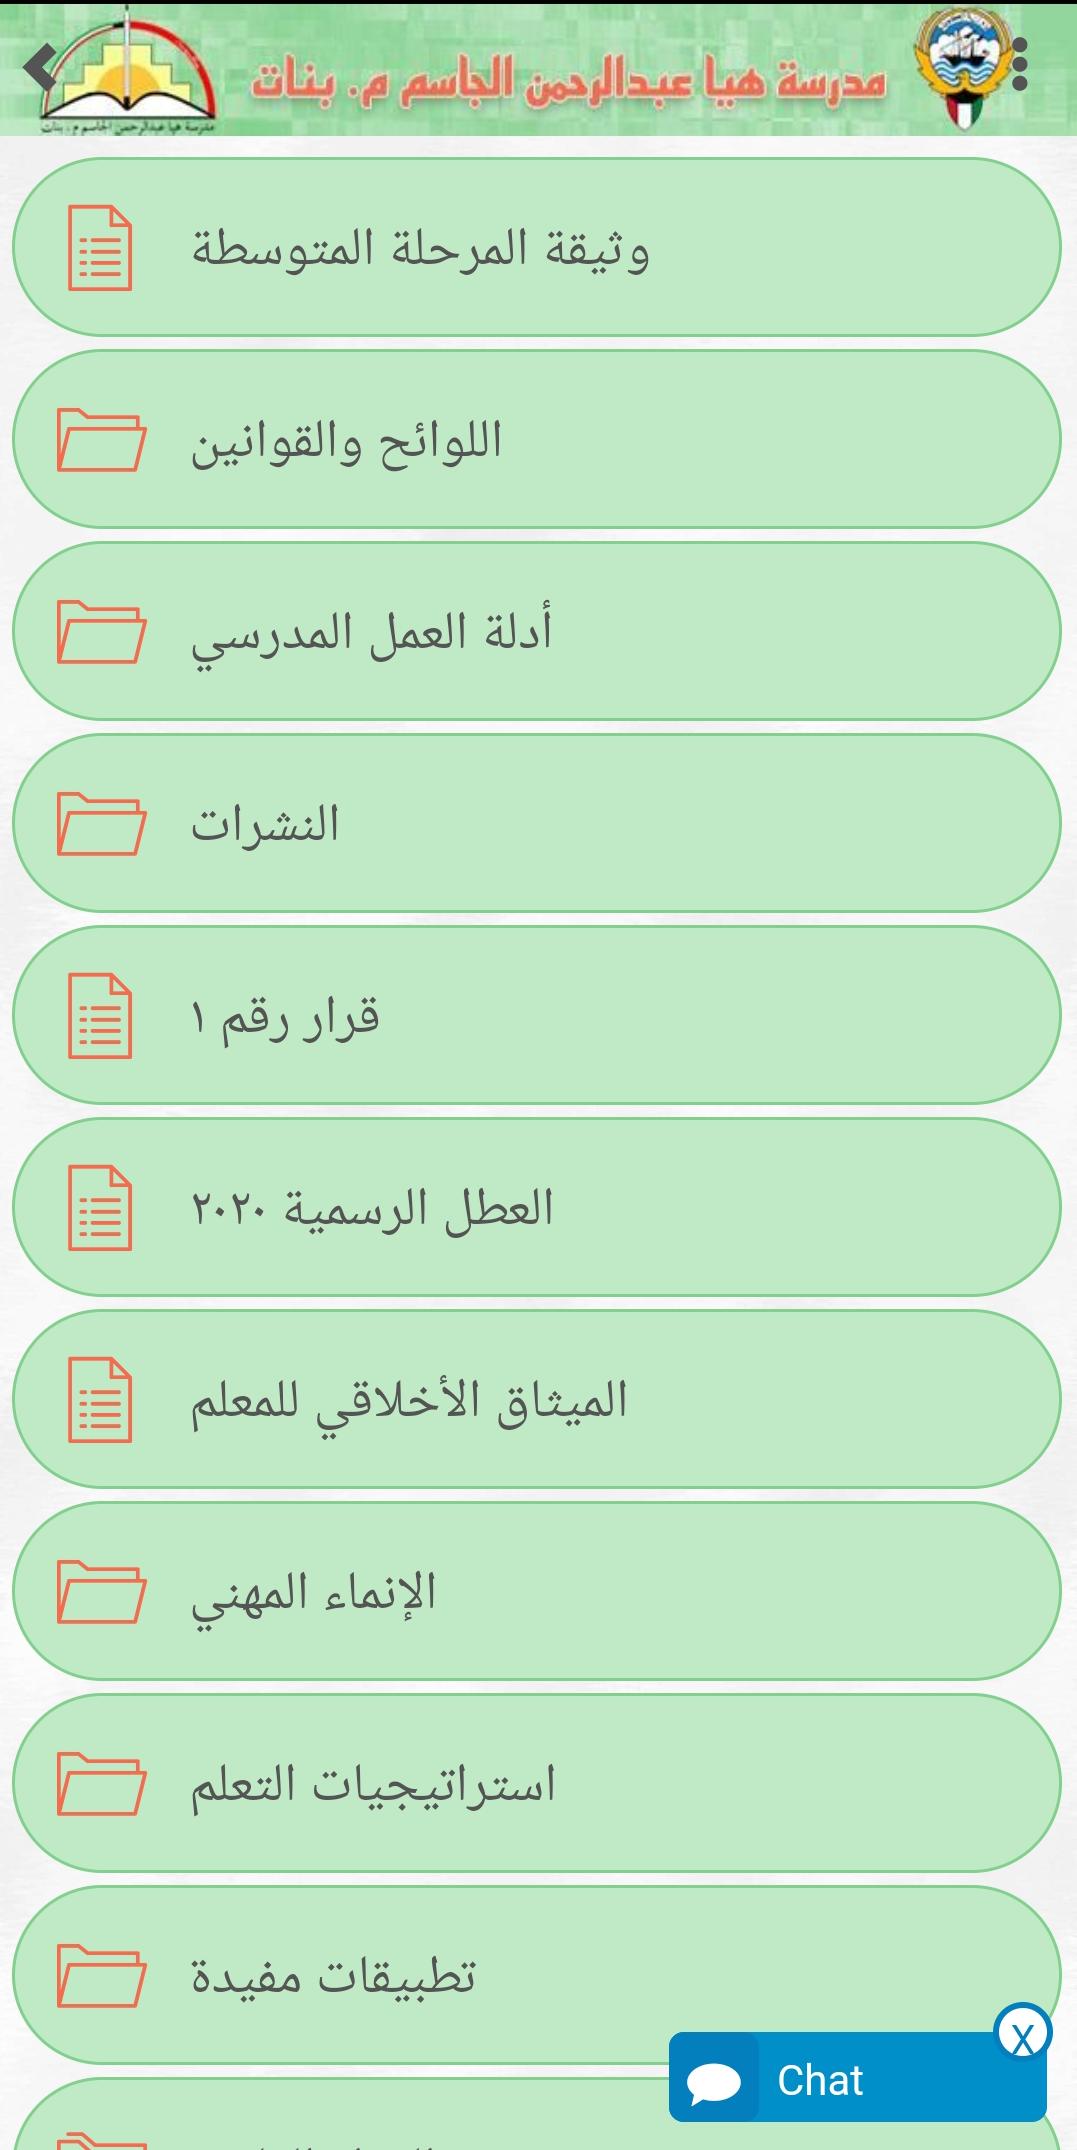 مدرسة هيا عبدالرحمن الجاسم م. بنات for Android - APK Download